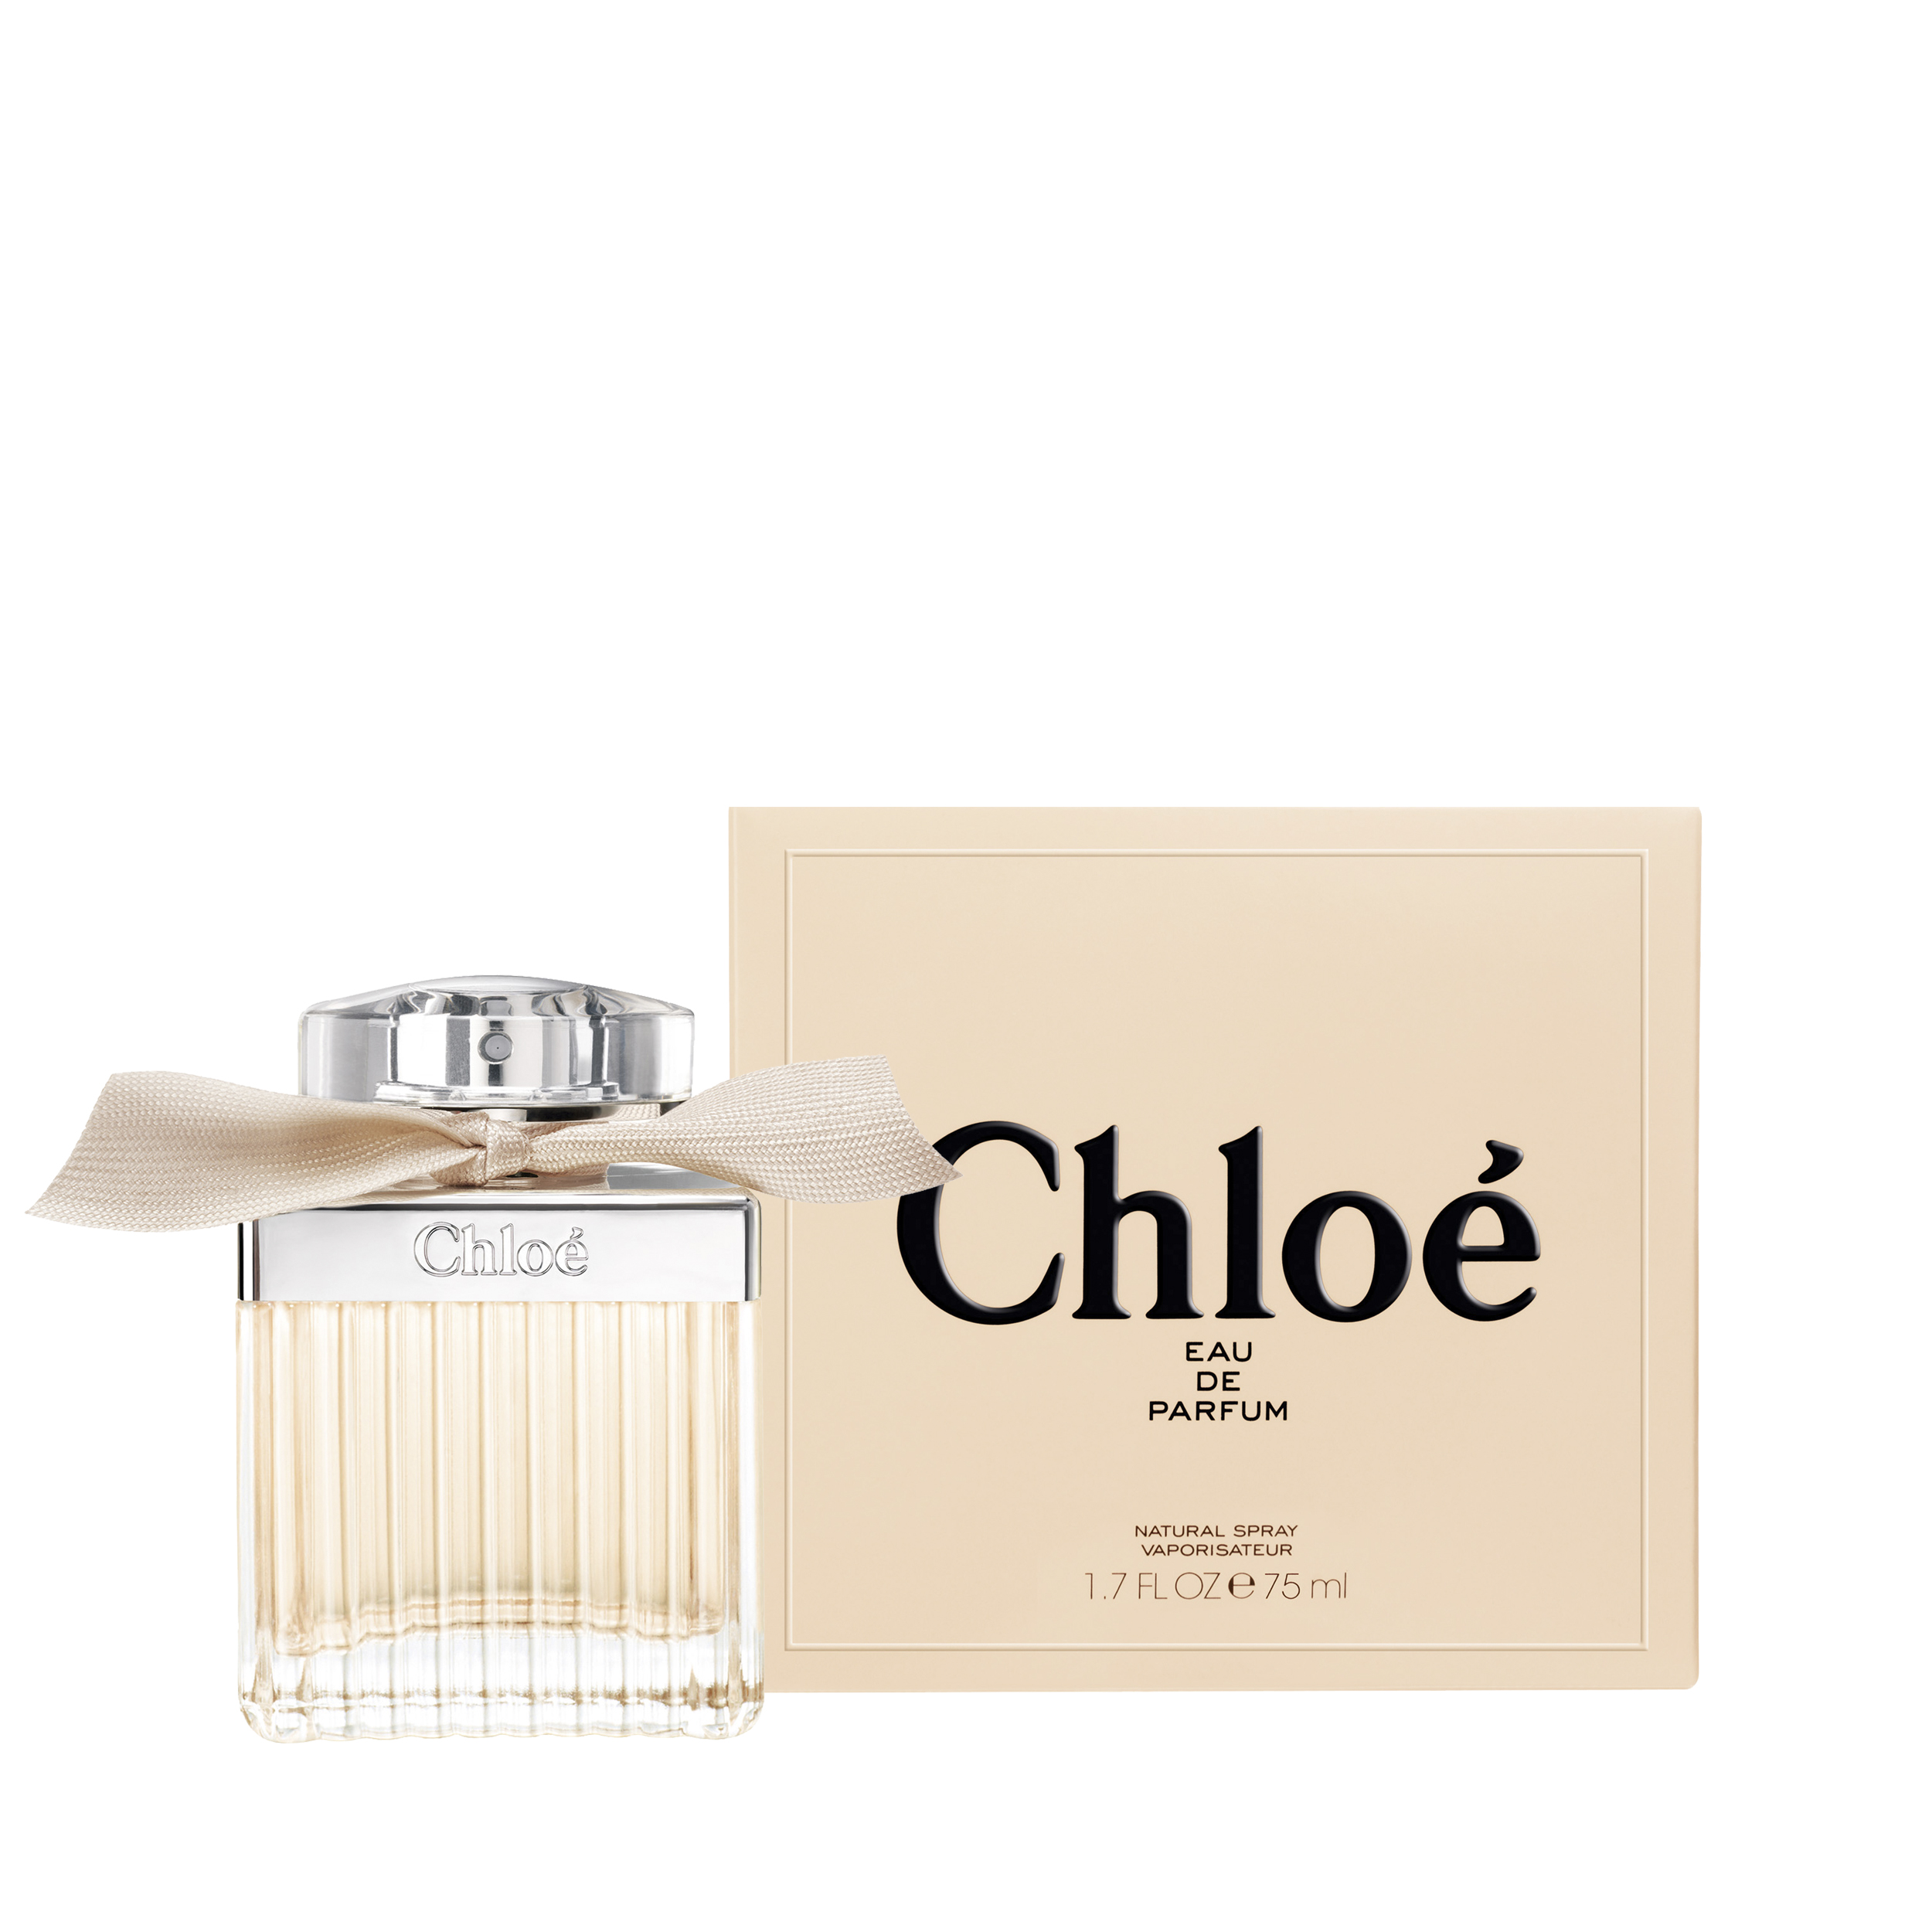 Signature Eau de Parfum by Chloé - ₱8,998.00